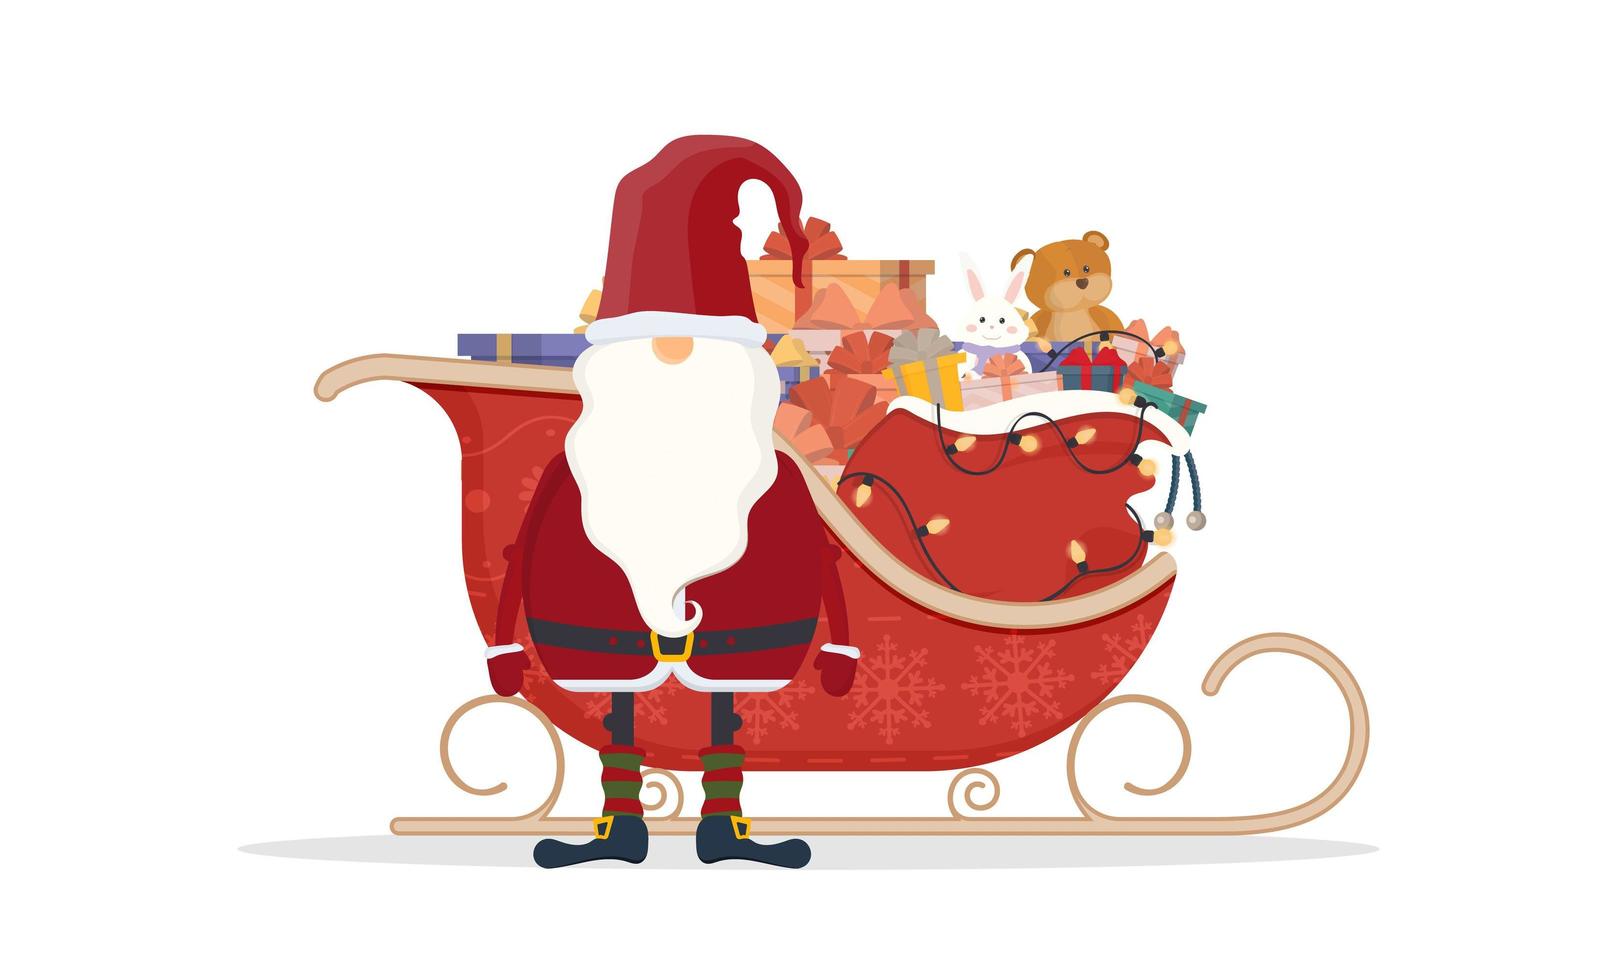 Kerstman met rode sleeën. sleeën, geschenken, nieuwjaar en kerstconcept. vectorillustratie geïsoleerd op een witte achtergrond. ontwerp in cartoonstijl. vector